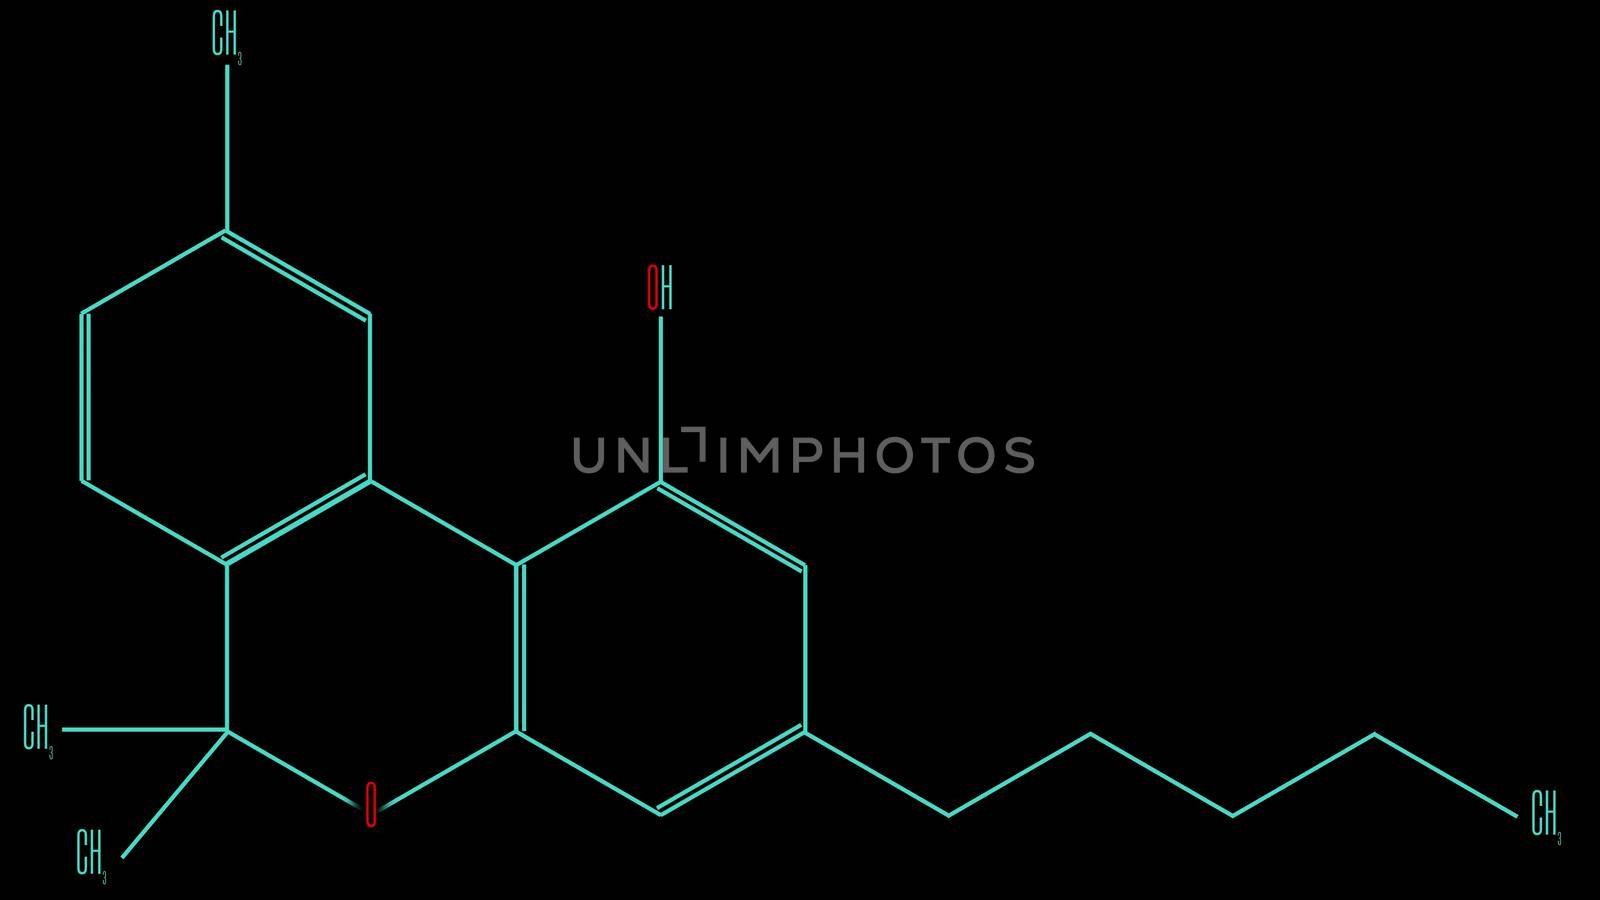 Illustration chemical formula of the cannabinol molecule by Chudakov